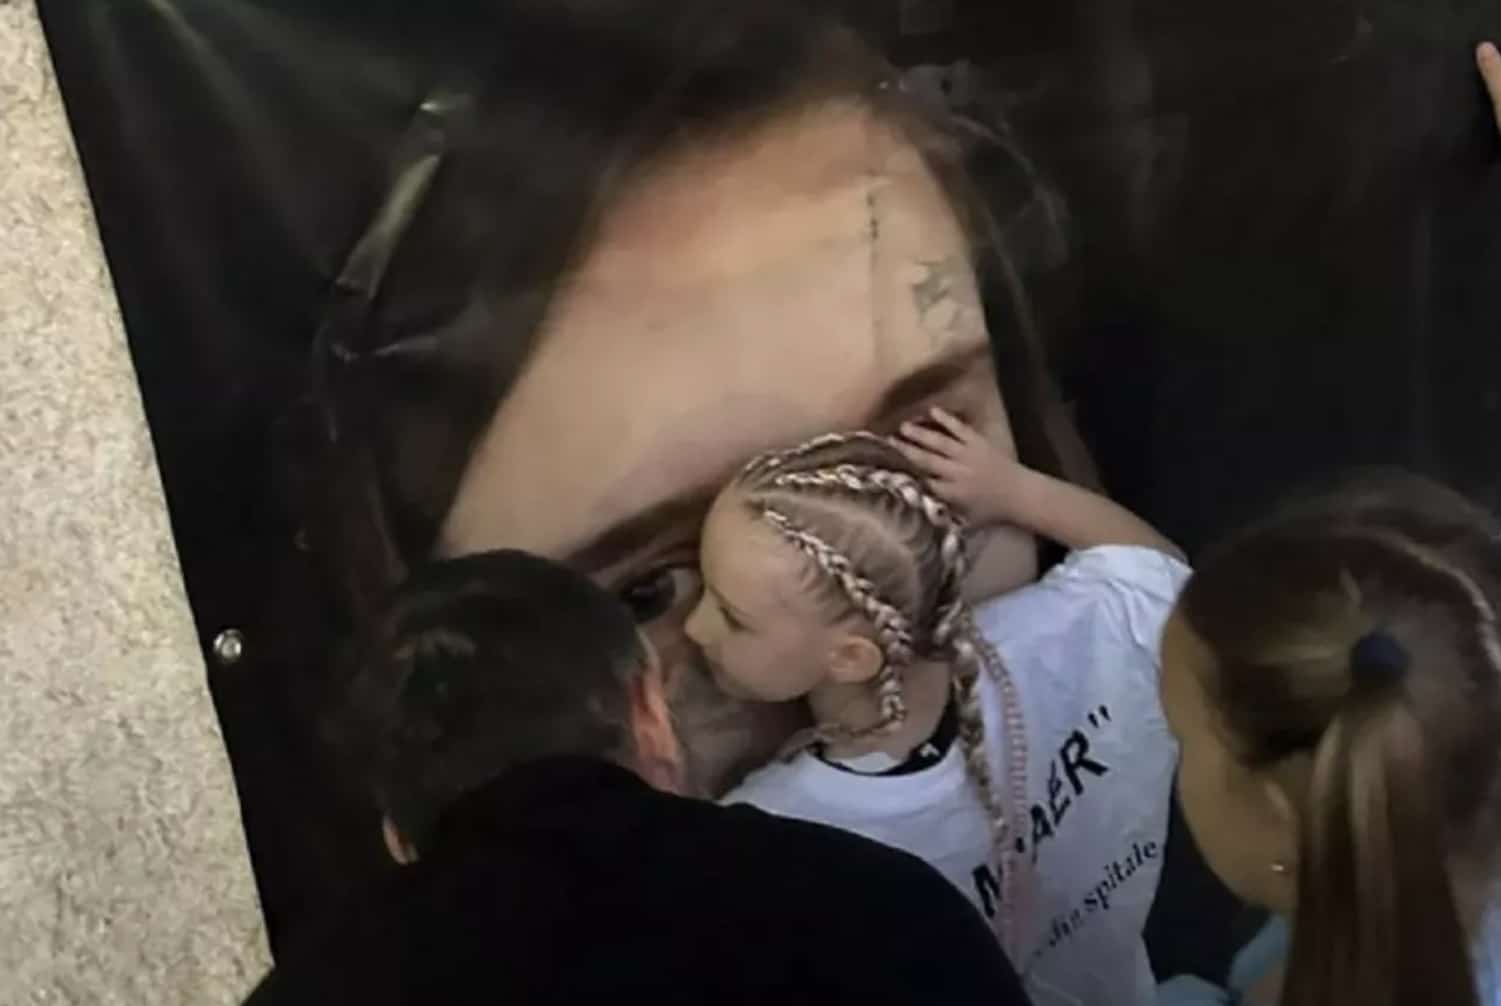 "Dar nu sunt brațele mamei". Fiica Alexandrei Ivanov a îmbrățișat afișul cu chipul mamei ei, în ziua în care aceasta ar fi împlinit 26 de ani